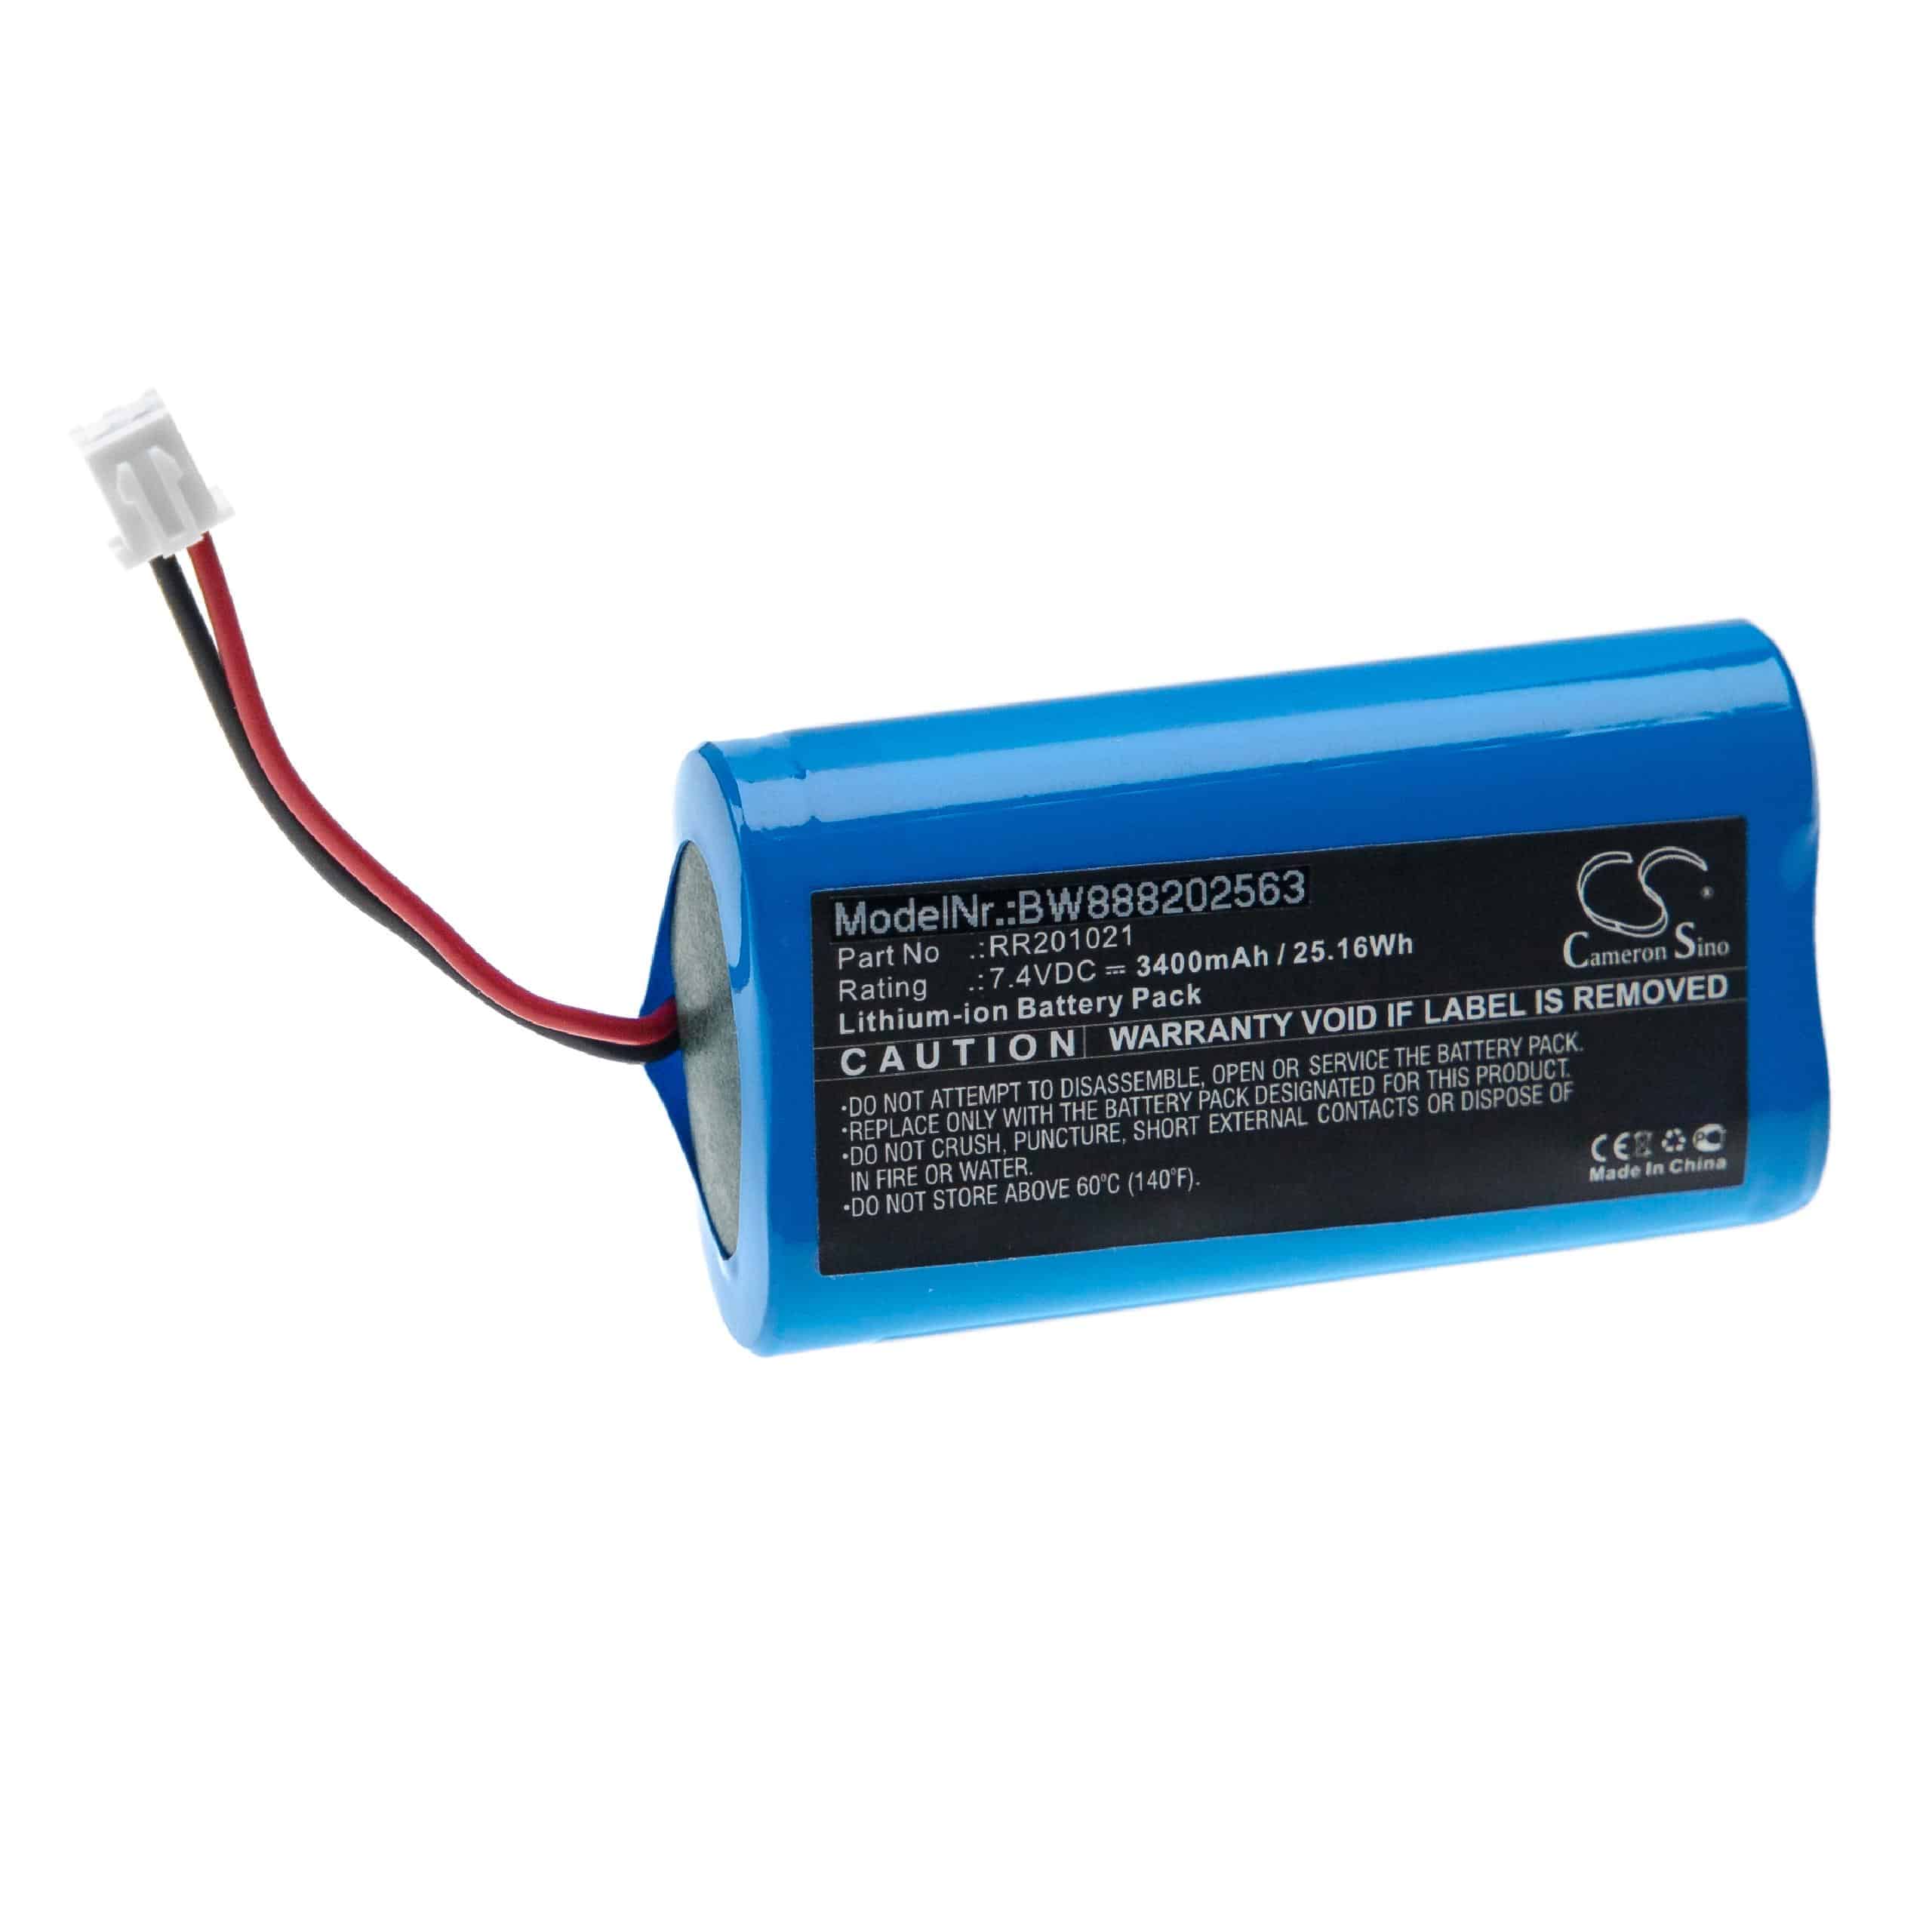 Batería reemplaza RR201021 para empalmador Infralan - 3400 mAh 7,4 V Li-Ion